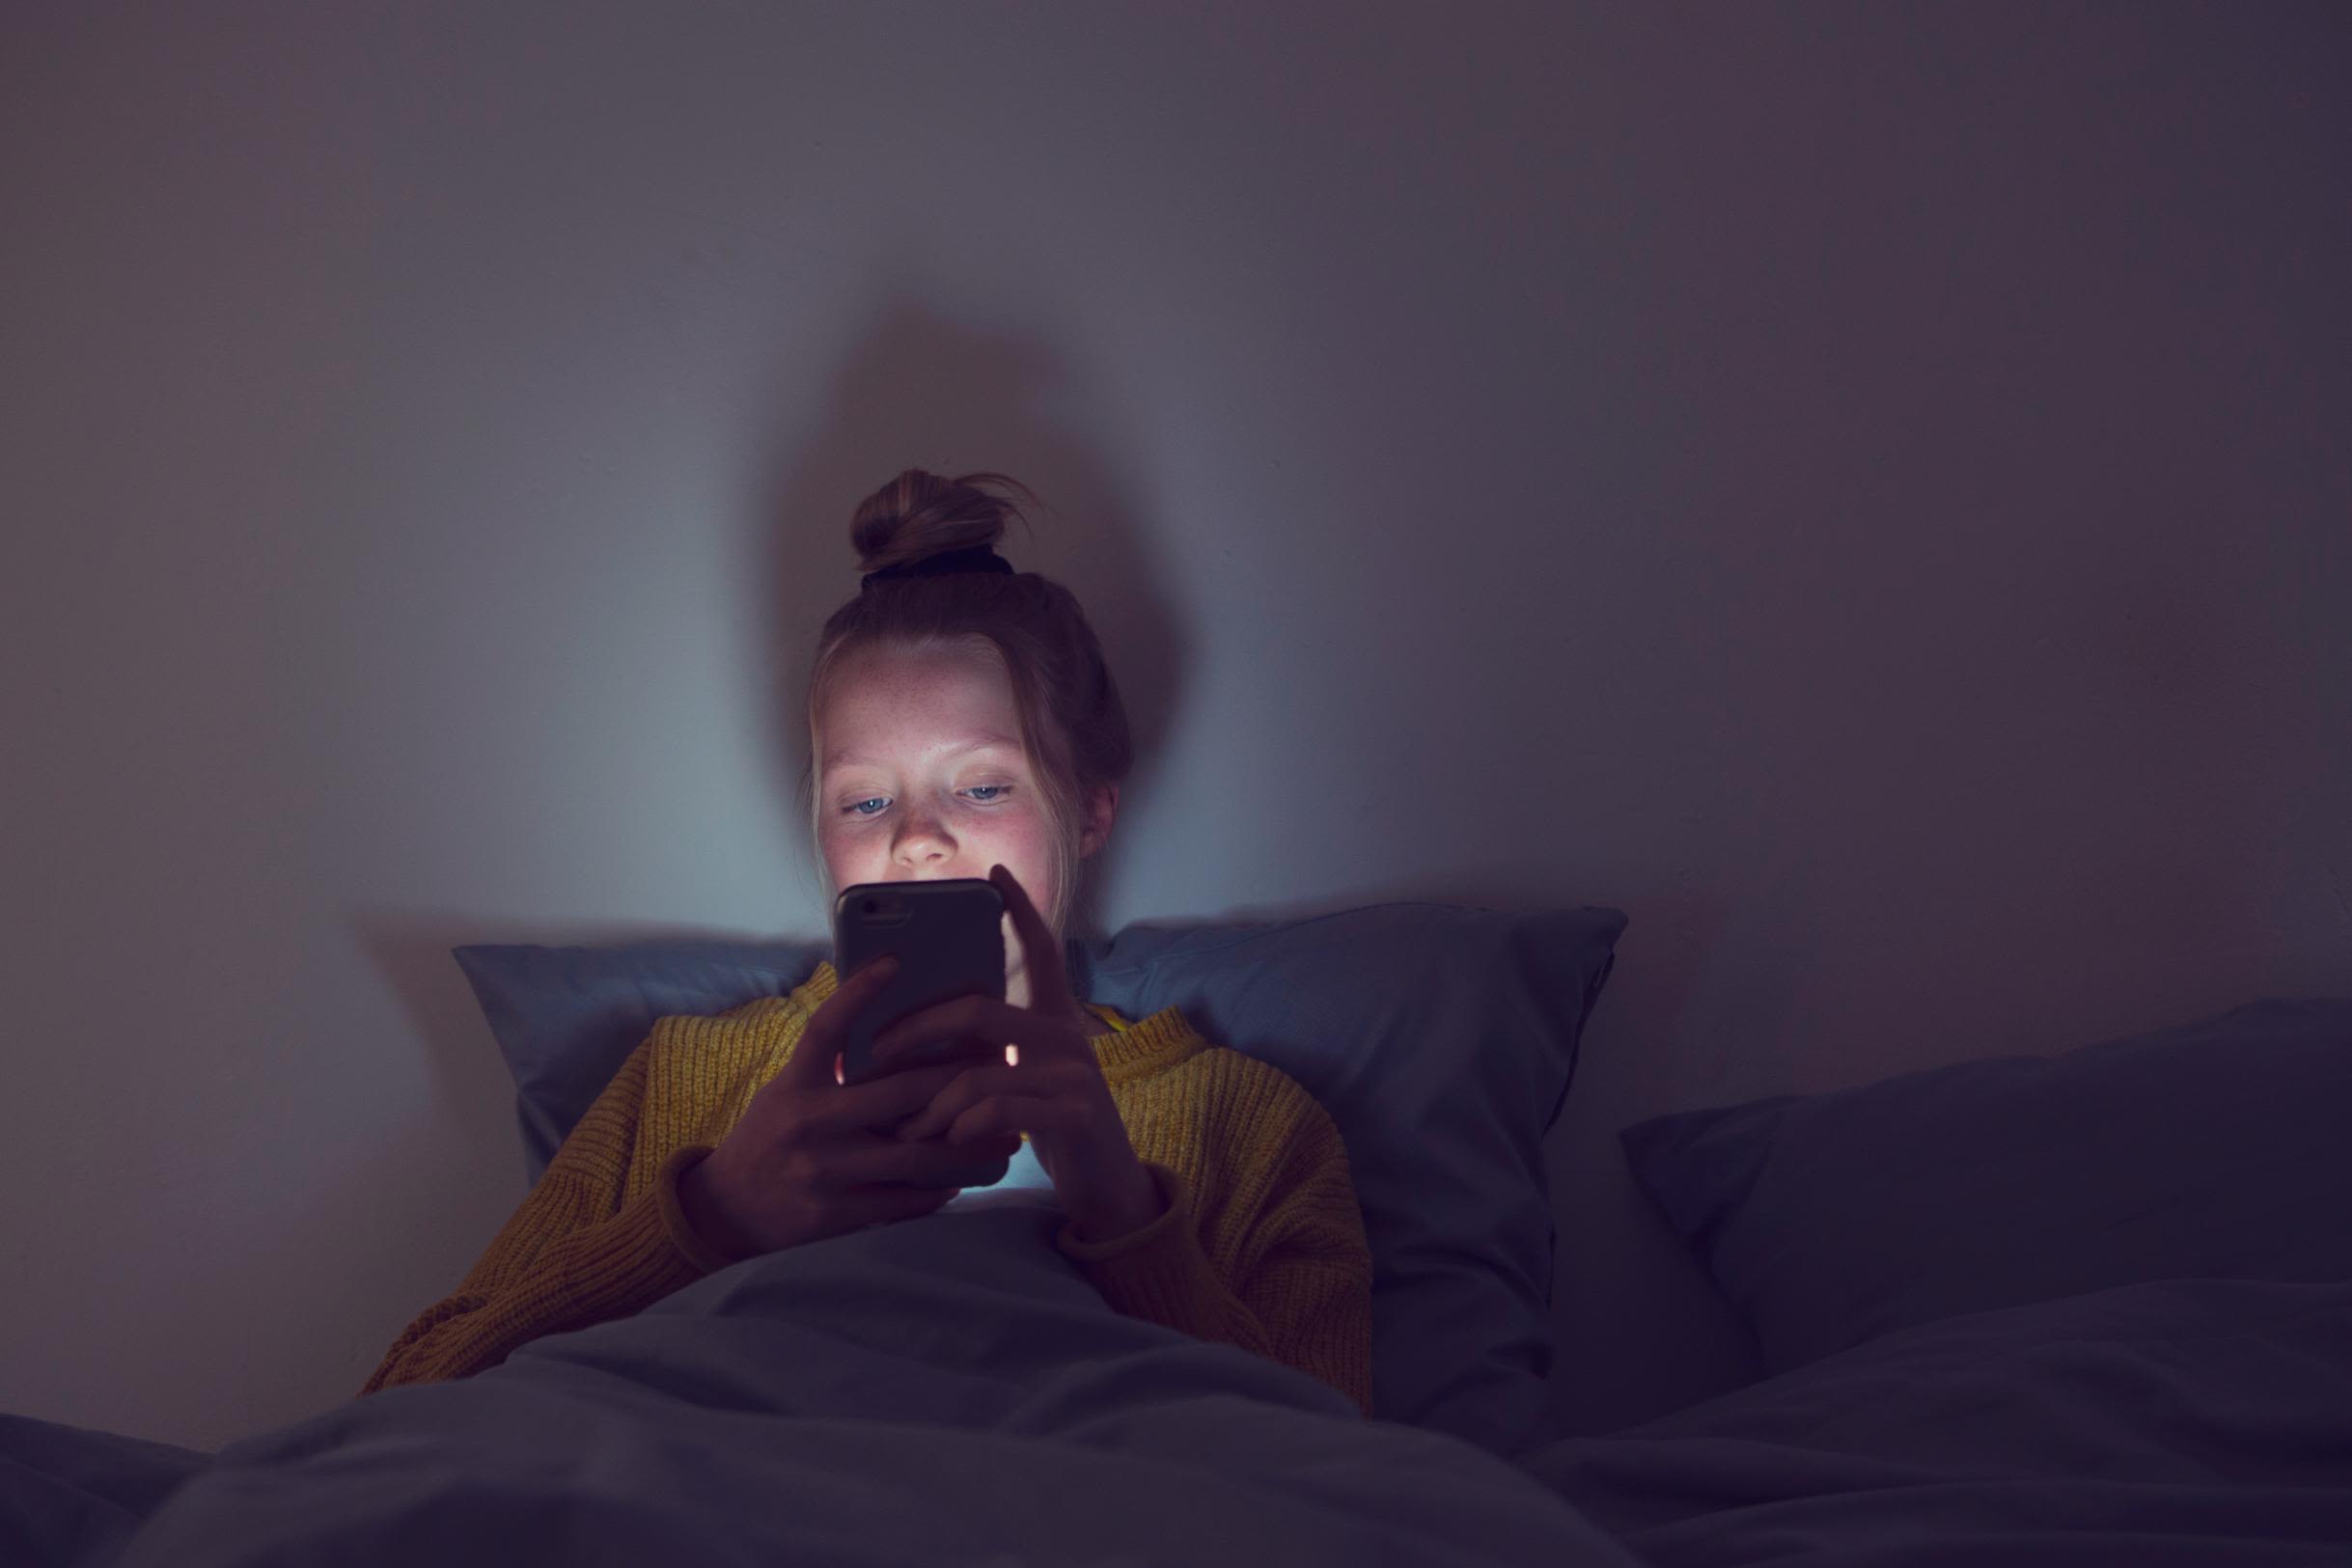 Teen Sleep Videos - Sleep battles with your teen: learning to let go | CNN